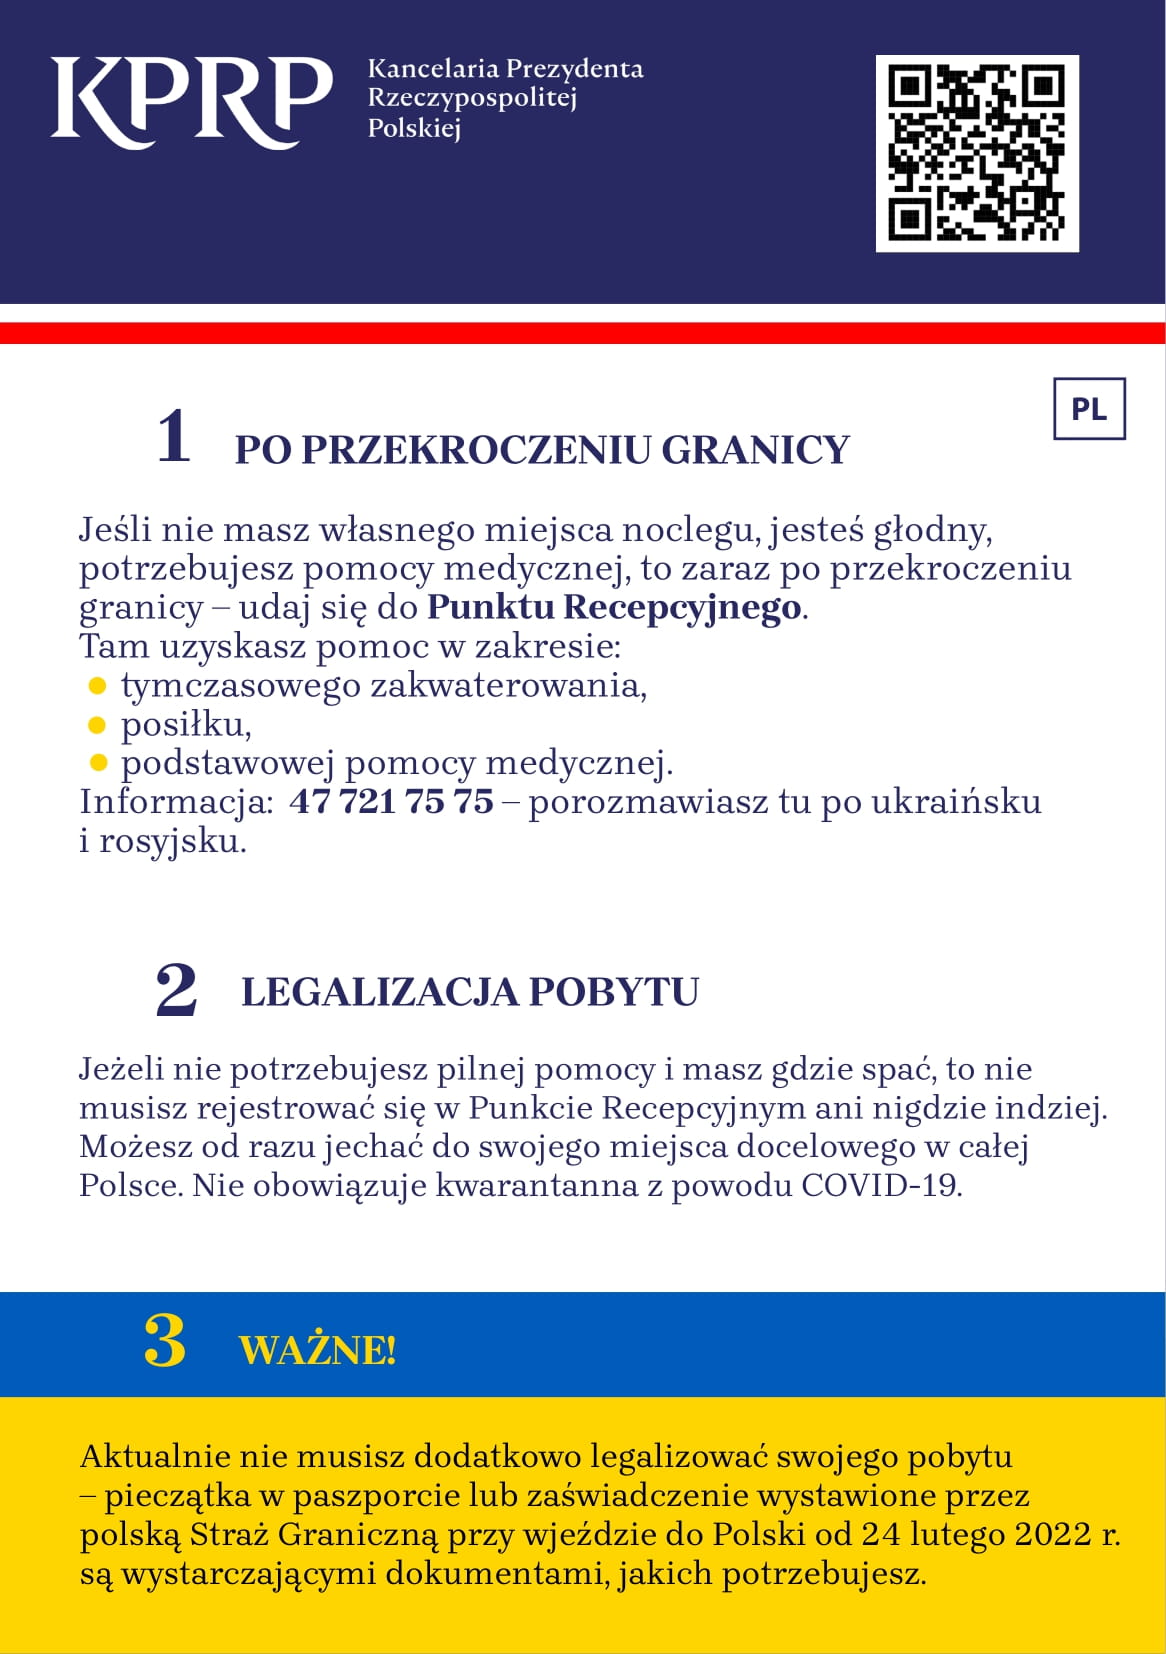 Kilka przydatnych informacji dla osób przyjeżdżających z Ukrainy po polsku